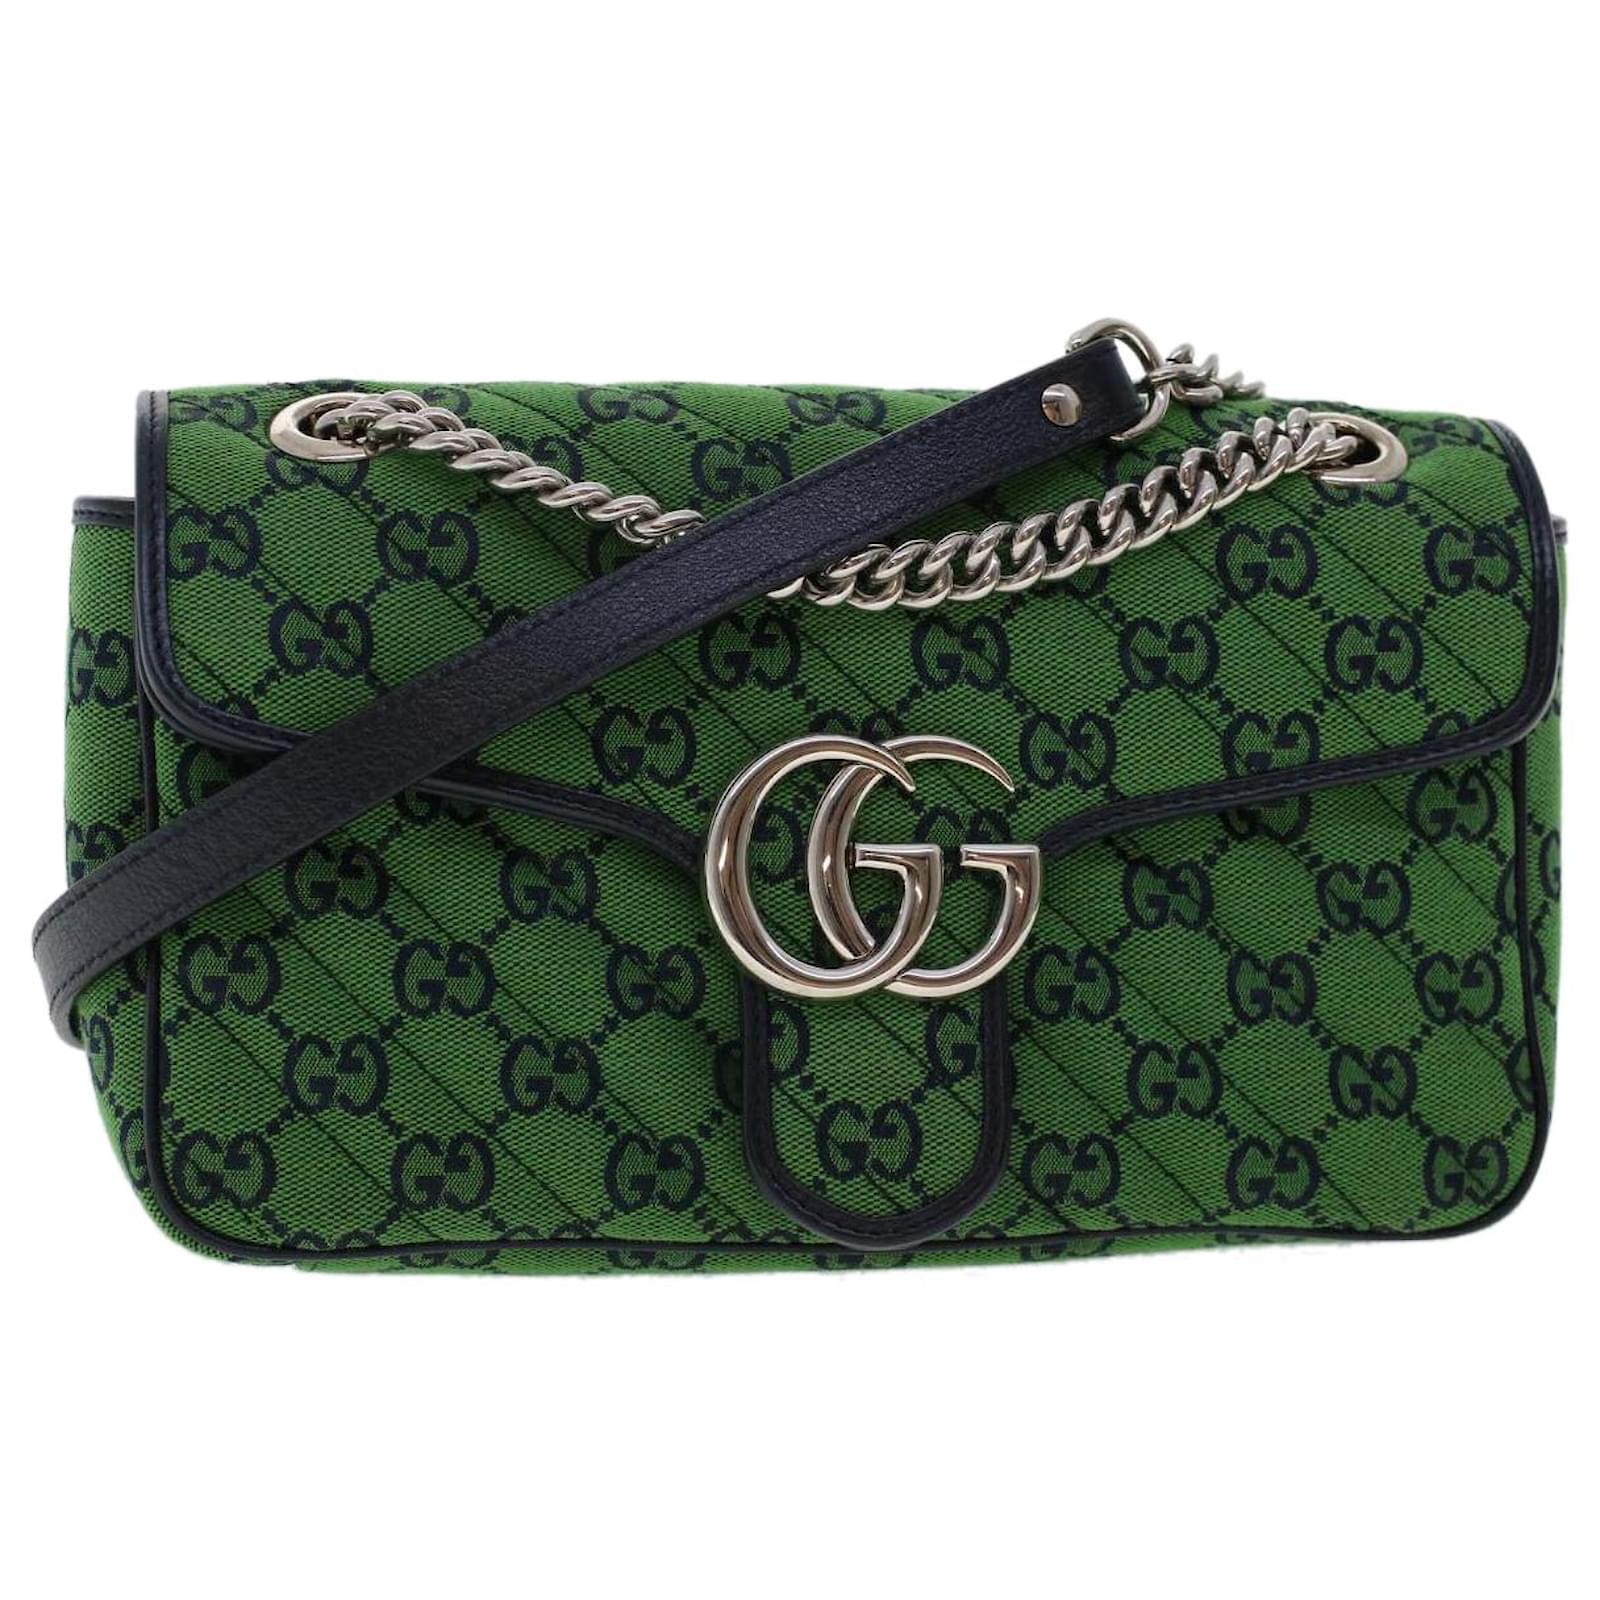 Gucci GG Marmont Super Mini Bag in Green